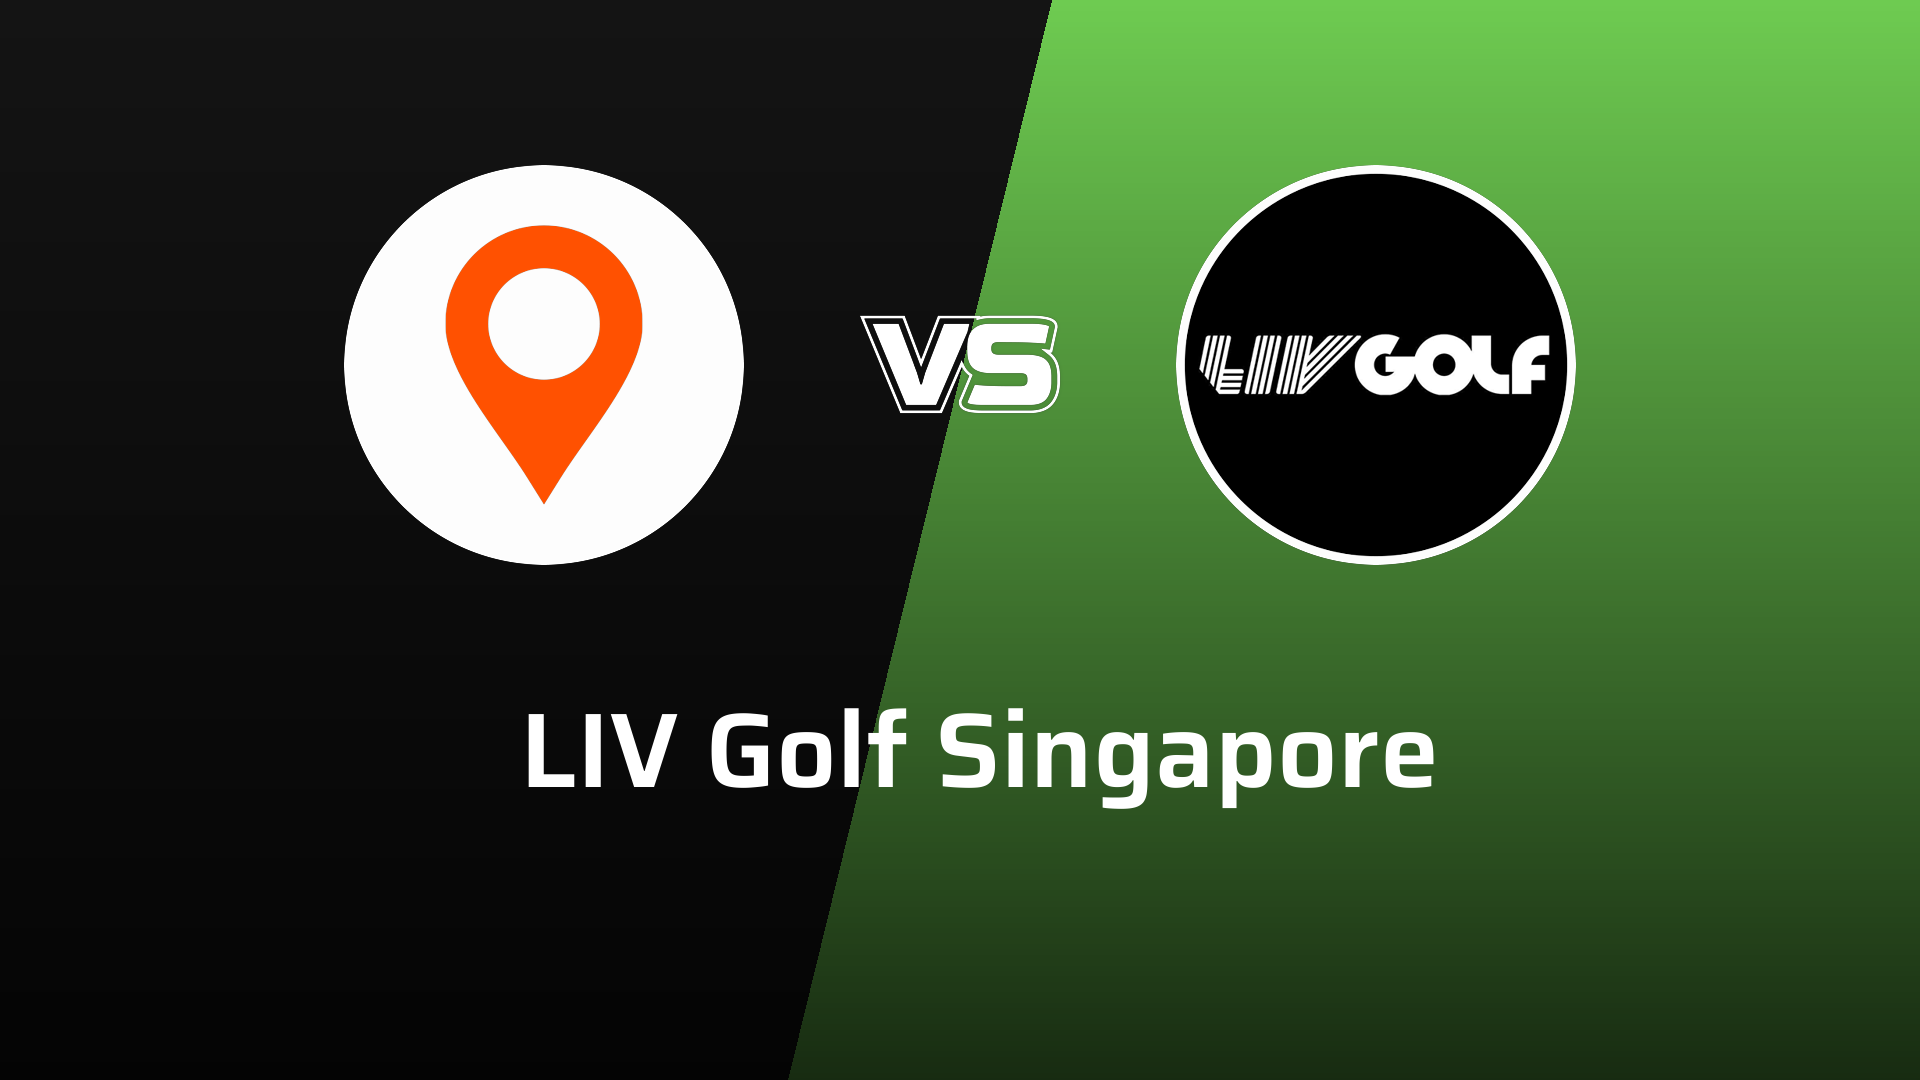 LIV Golf Singapore